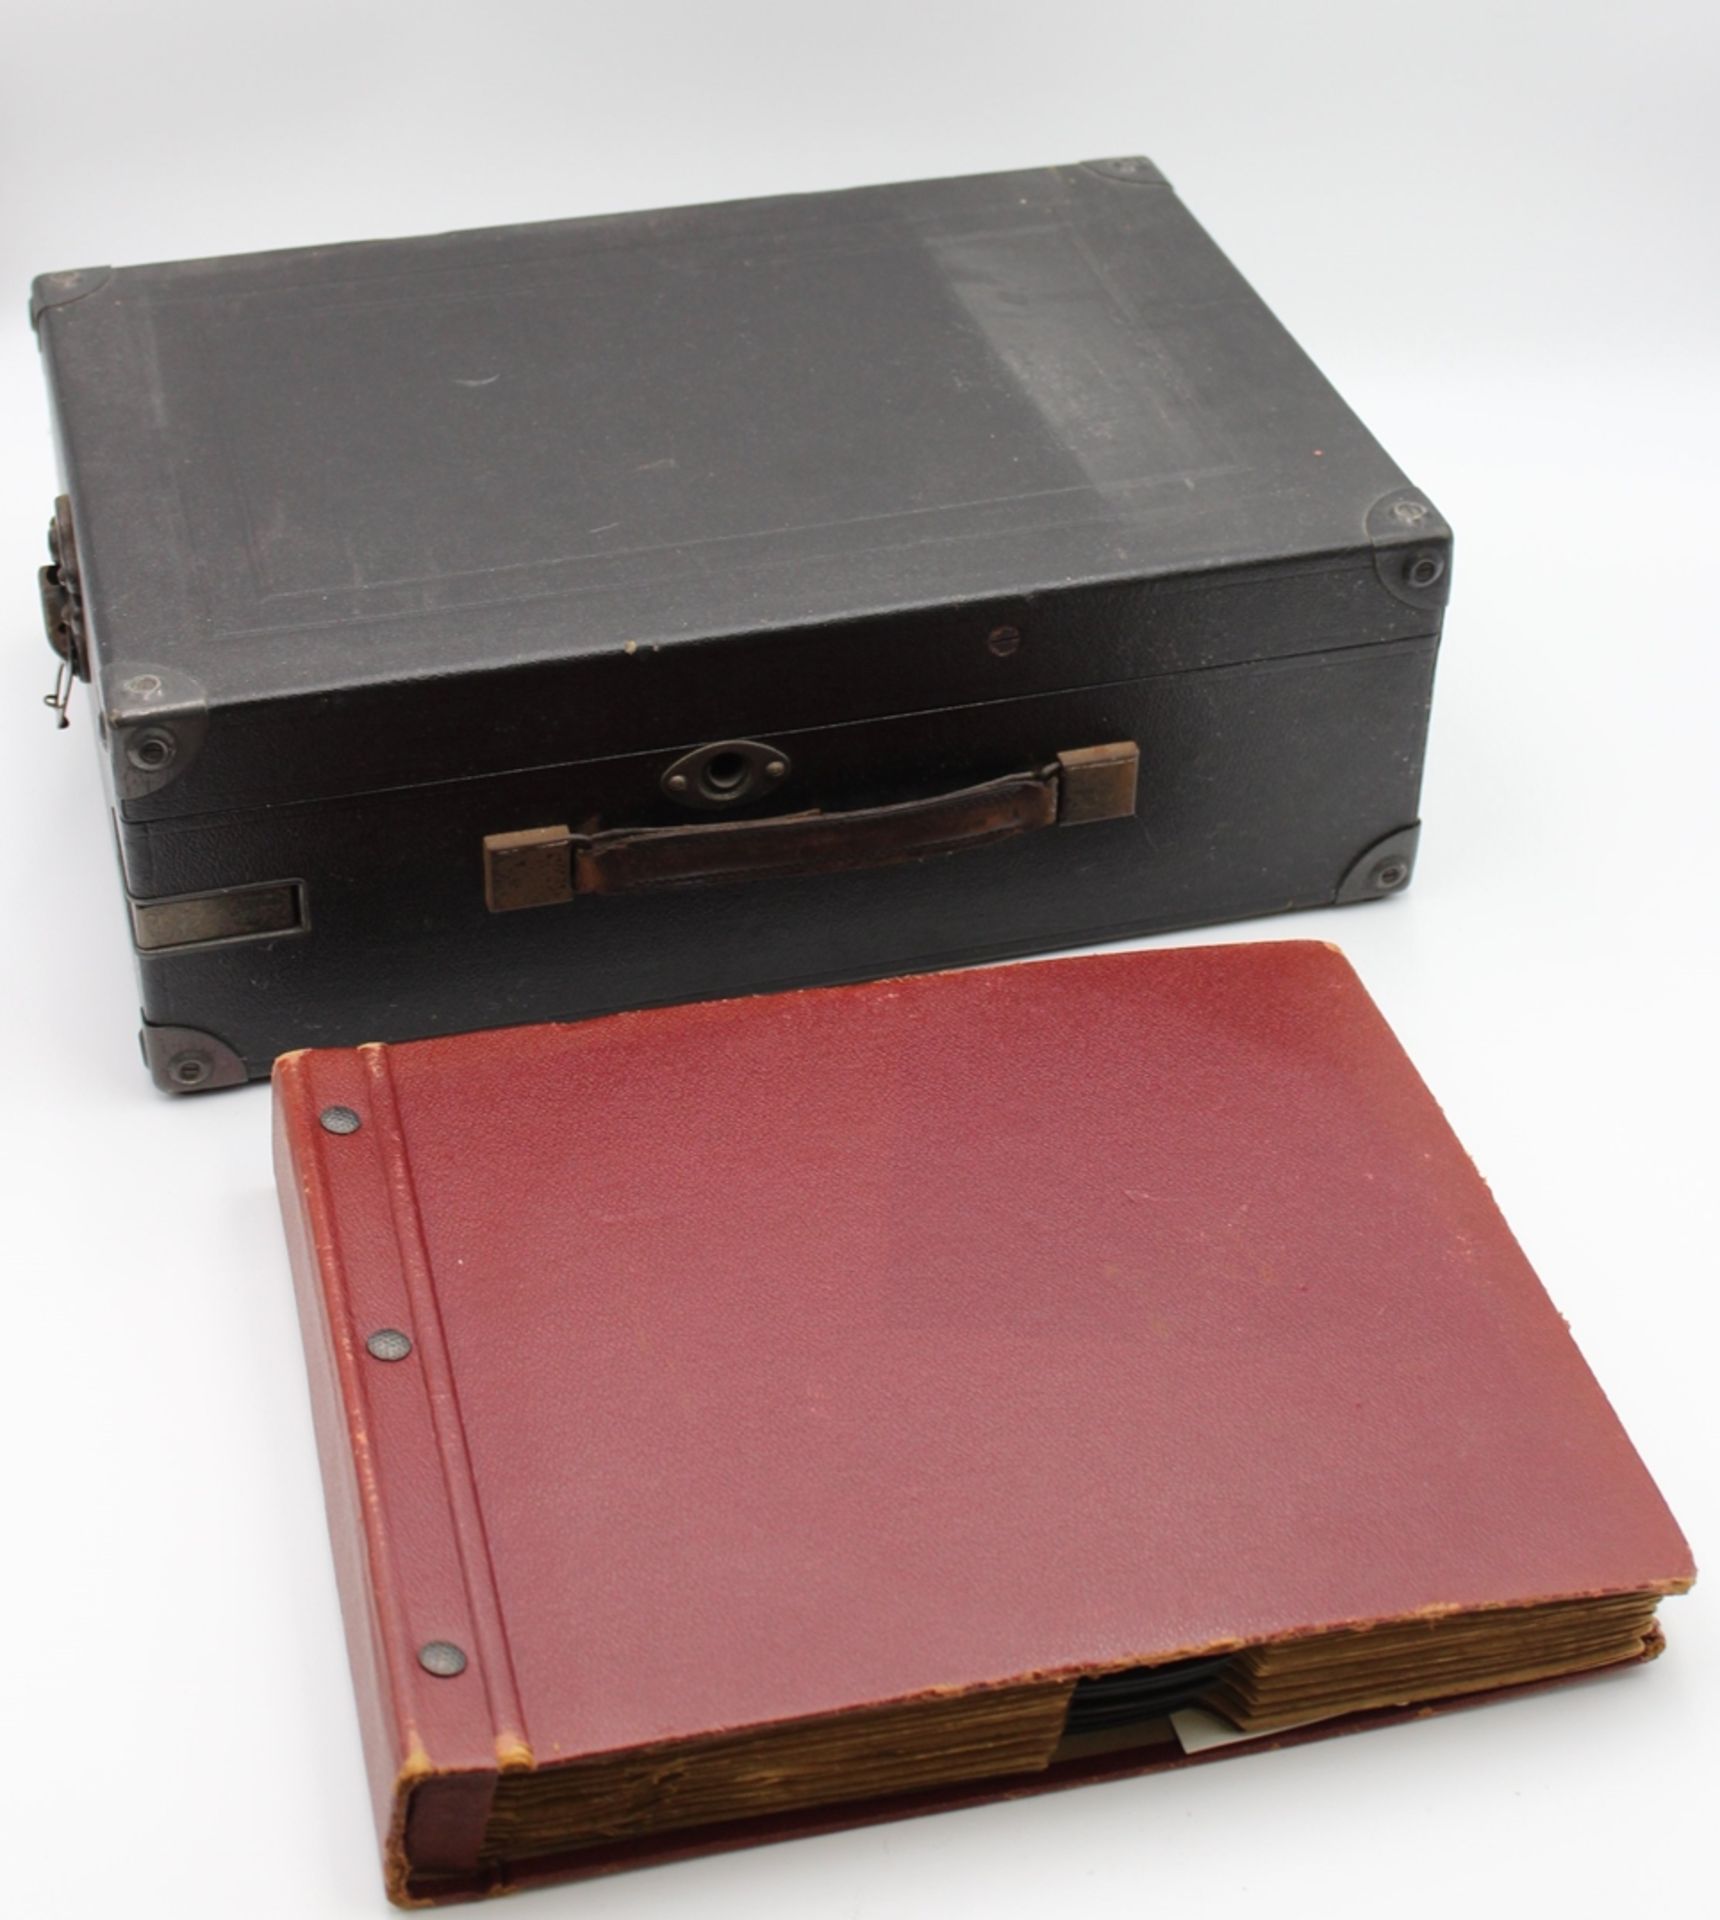 Koffer-Grammophon "Electrola" mit einem Album Schellackplatten, funktionstüchtig - Image 2 of 8